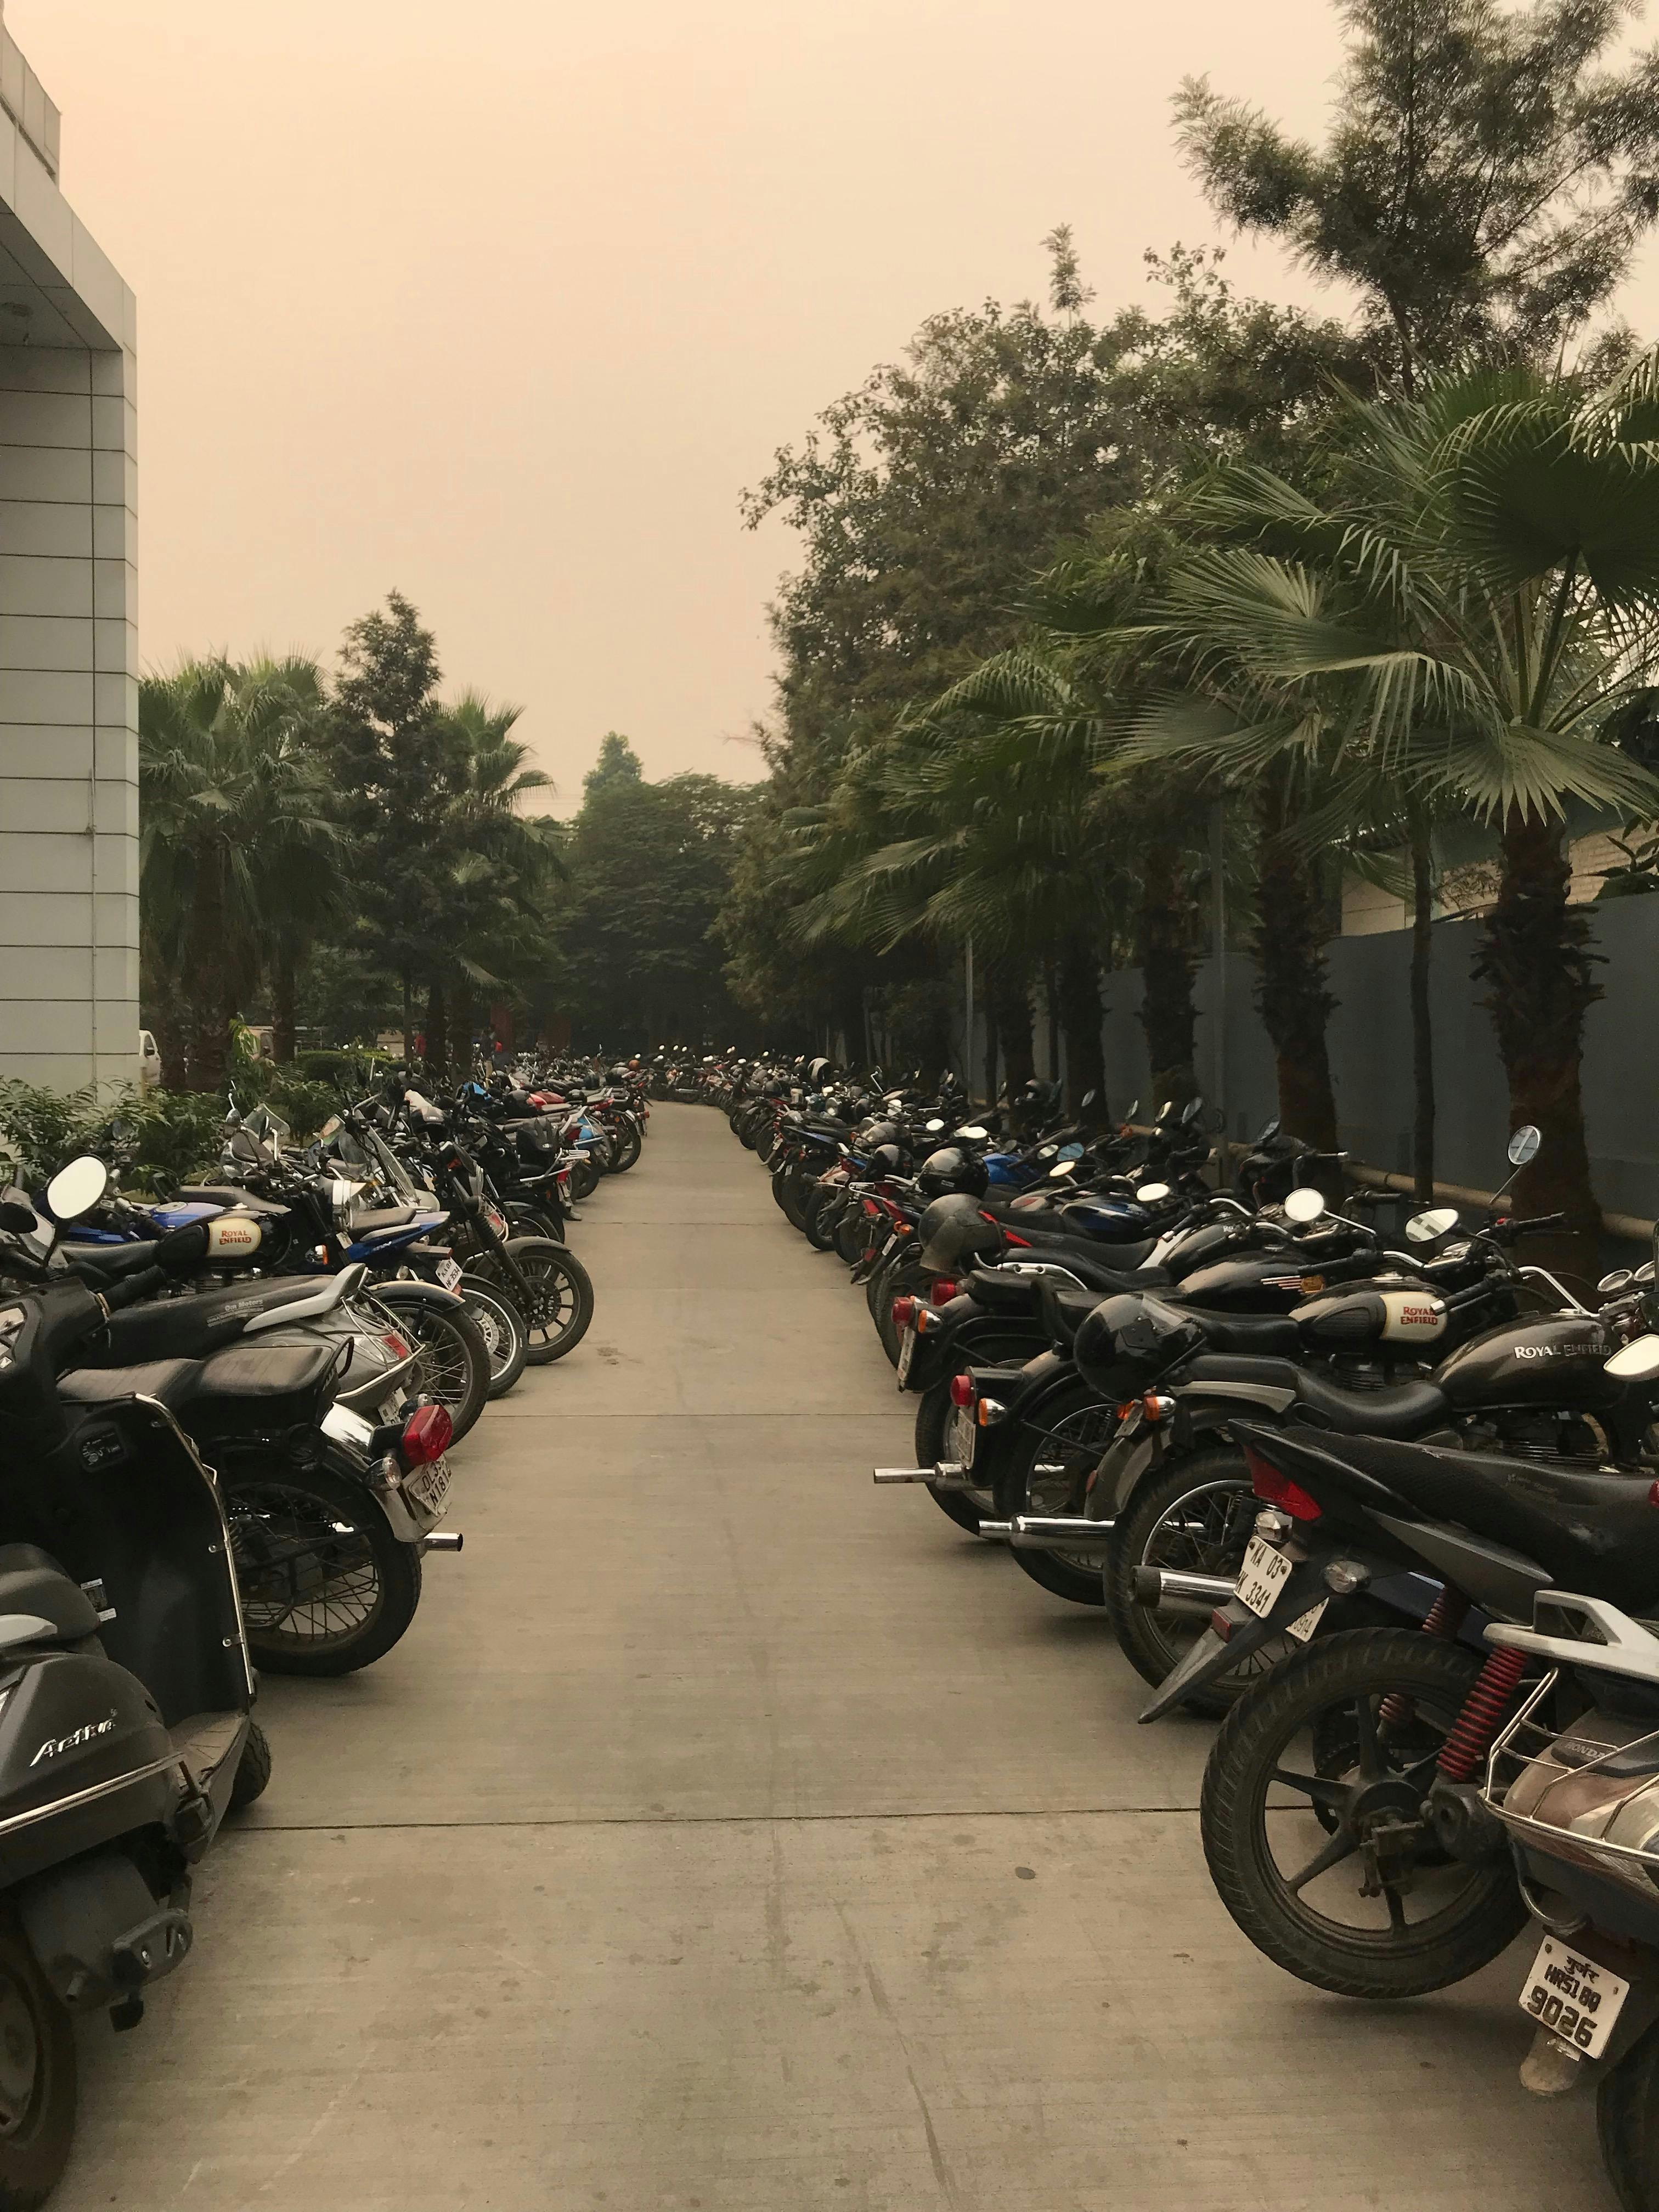 Free stock photo of bikes, parking, smog